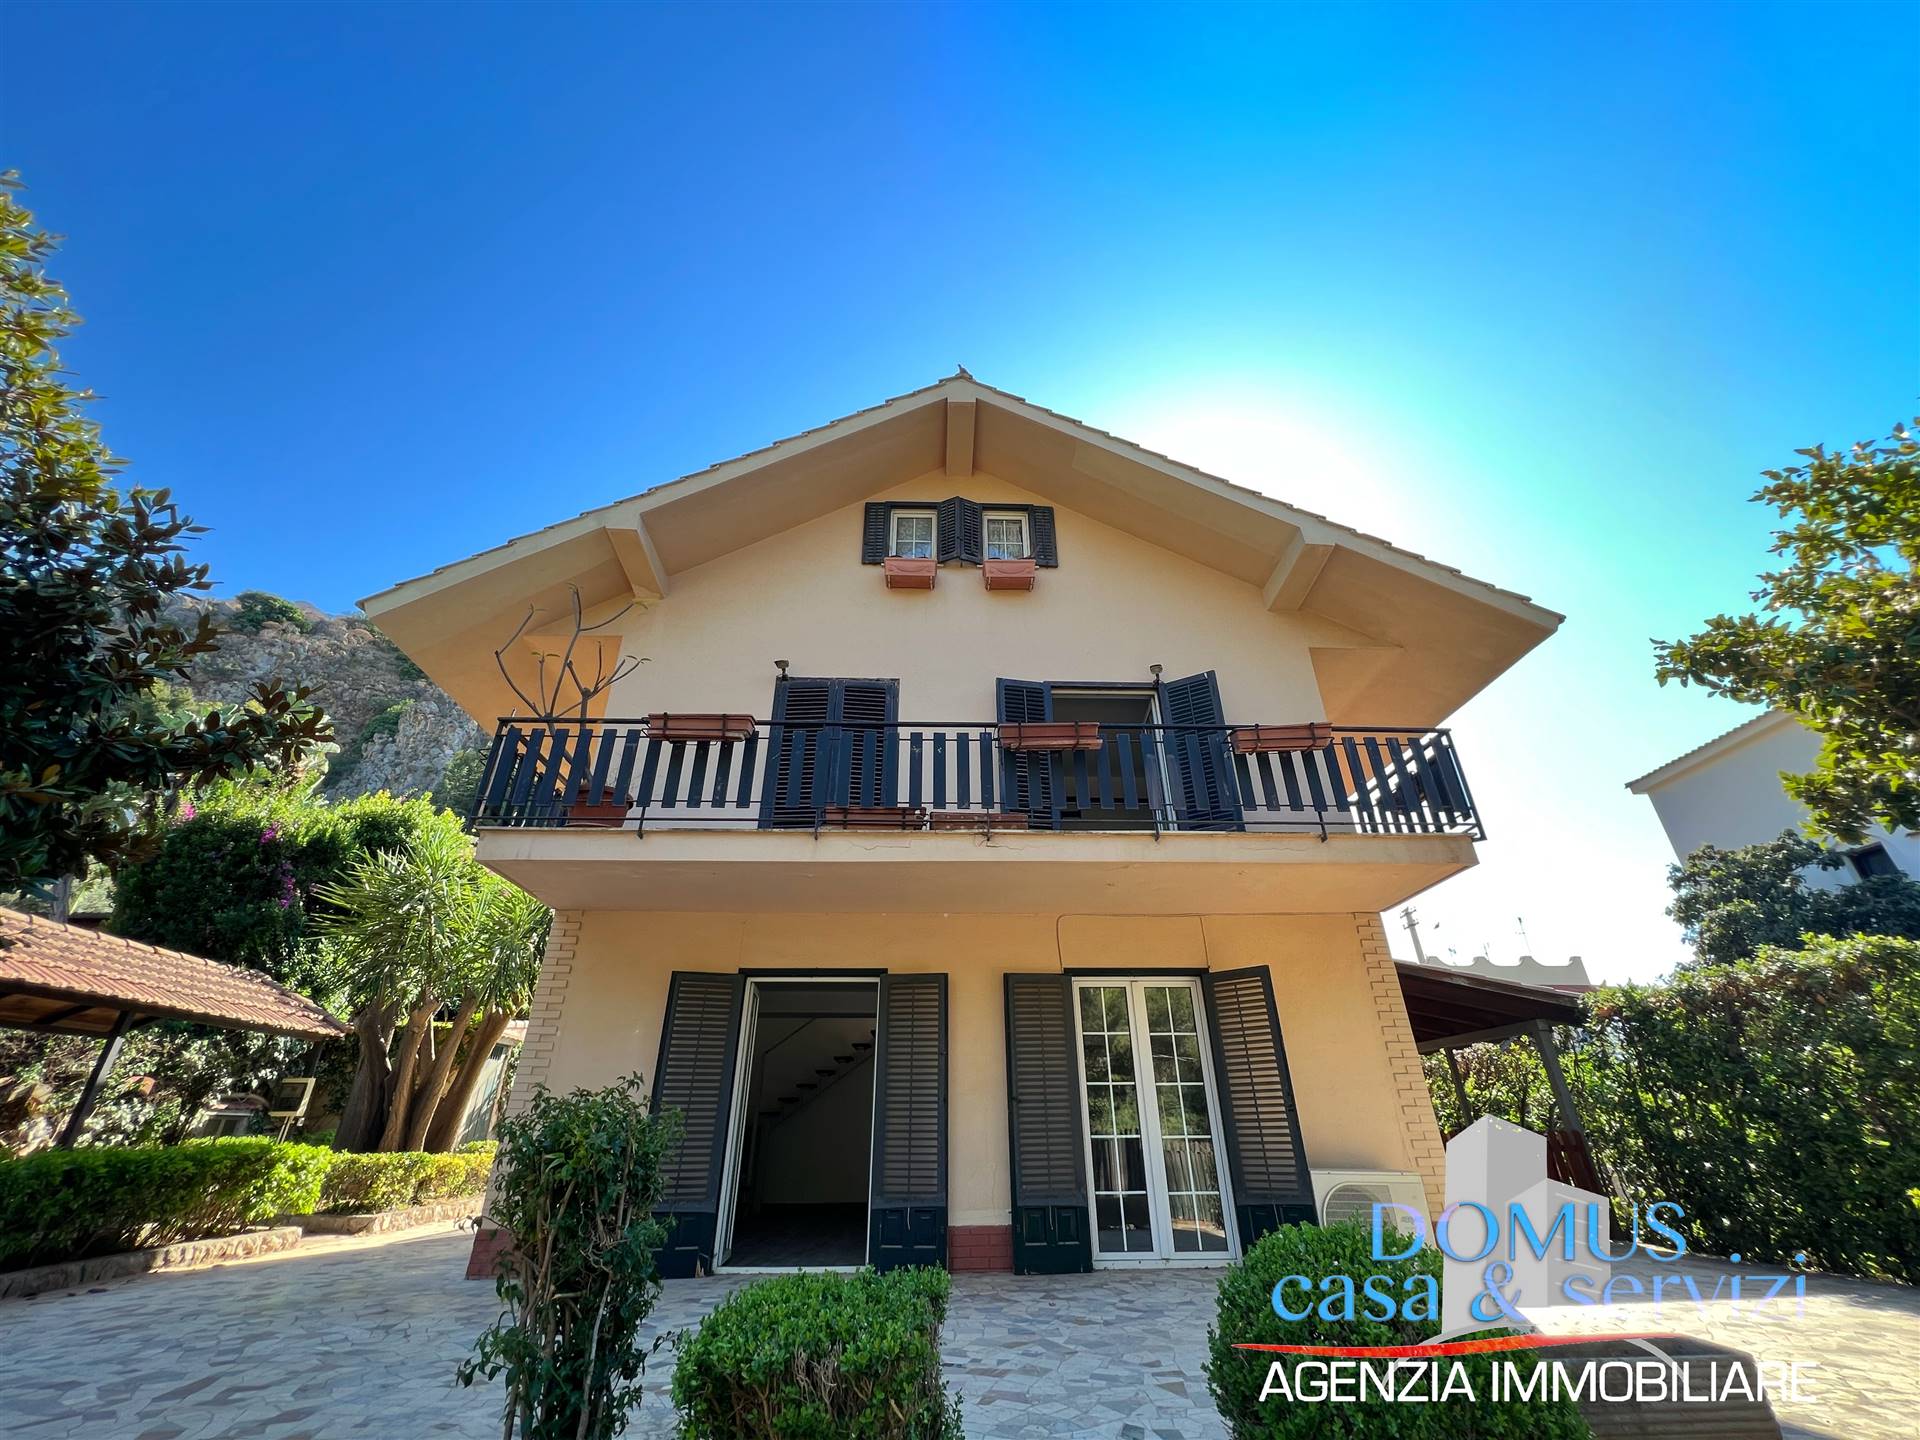 Villa in vendita a Capaci, 6 locali, zona Località: VILLAGGIO SOMMARIVA, prezzo € 250.000 | PortaleAgenzieImmobiliari.it